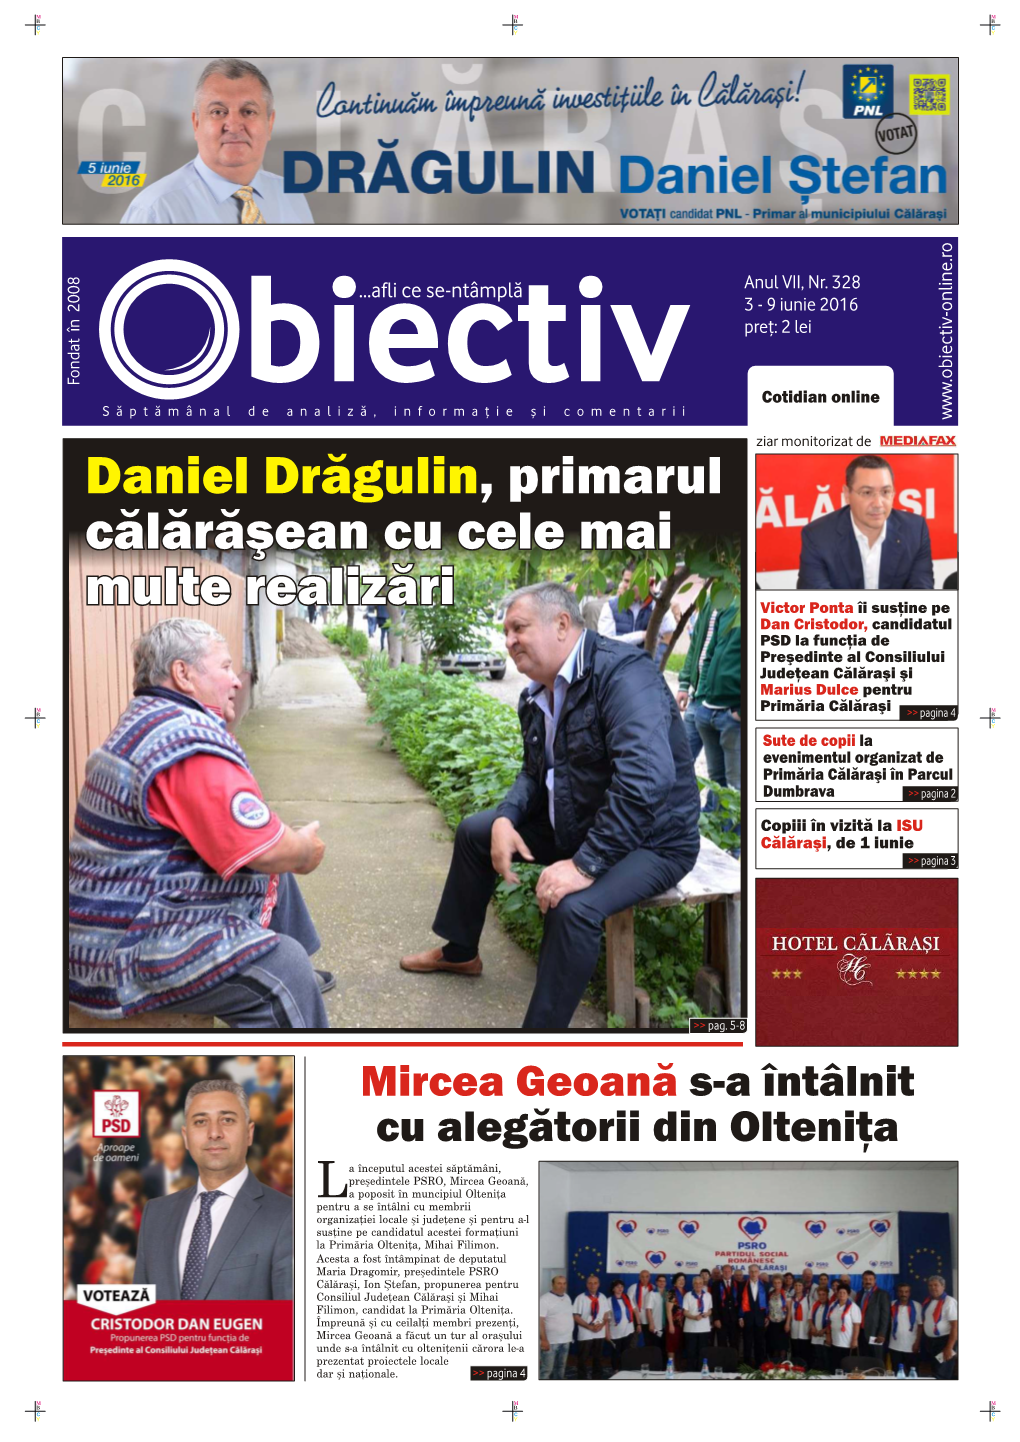 Daniel Drăgulin, Primarul Călărăşean Cu Cele Mai Multe Realizări